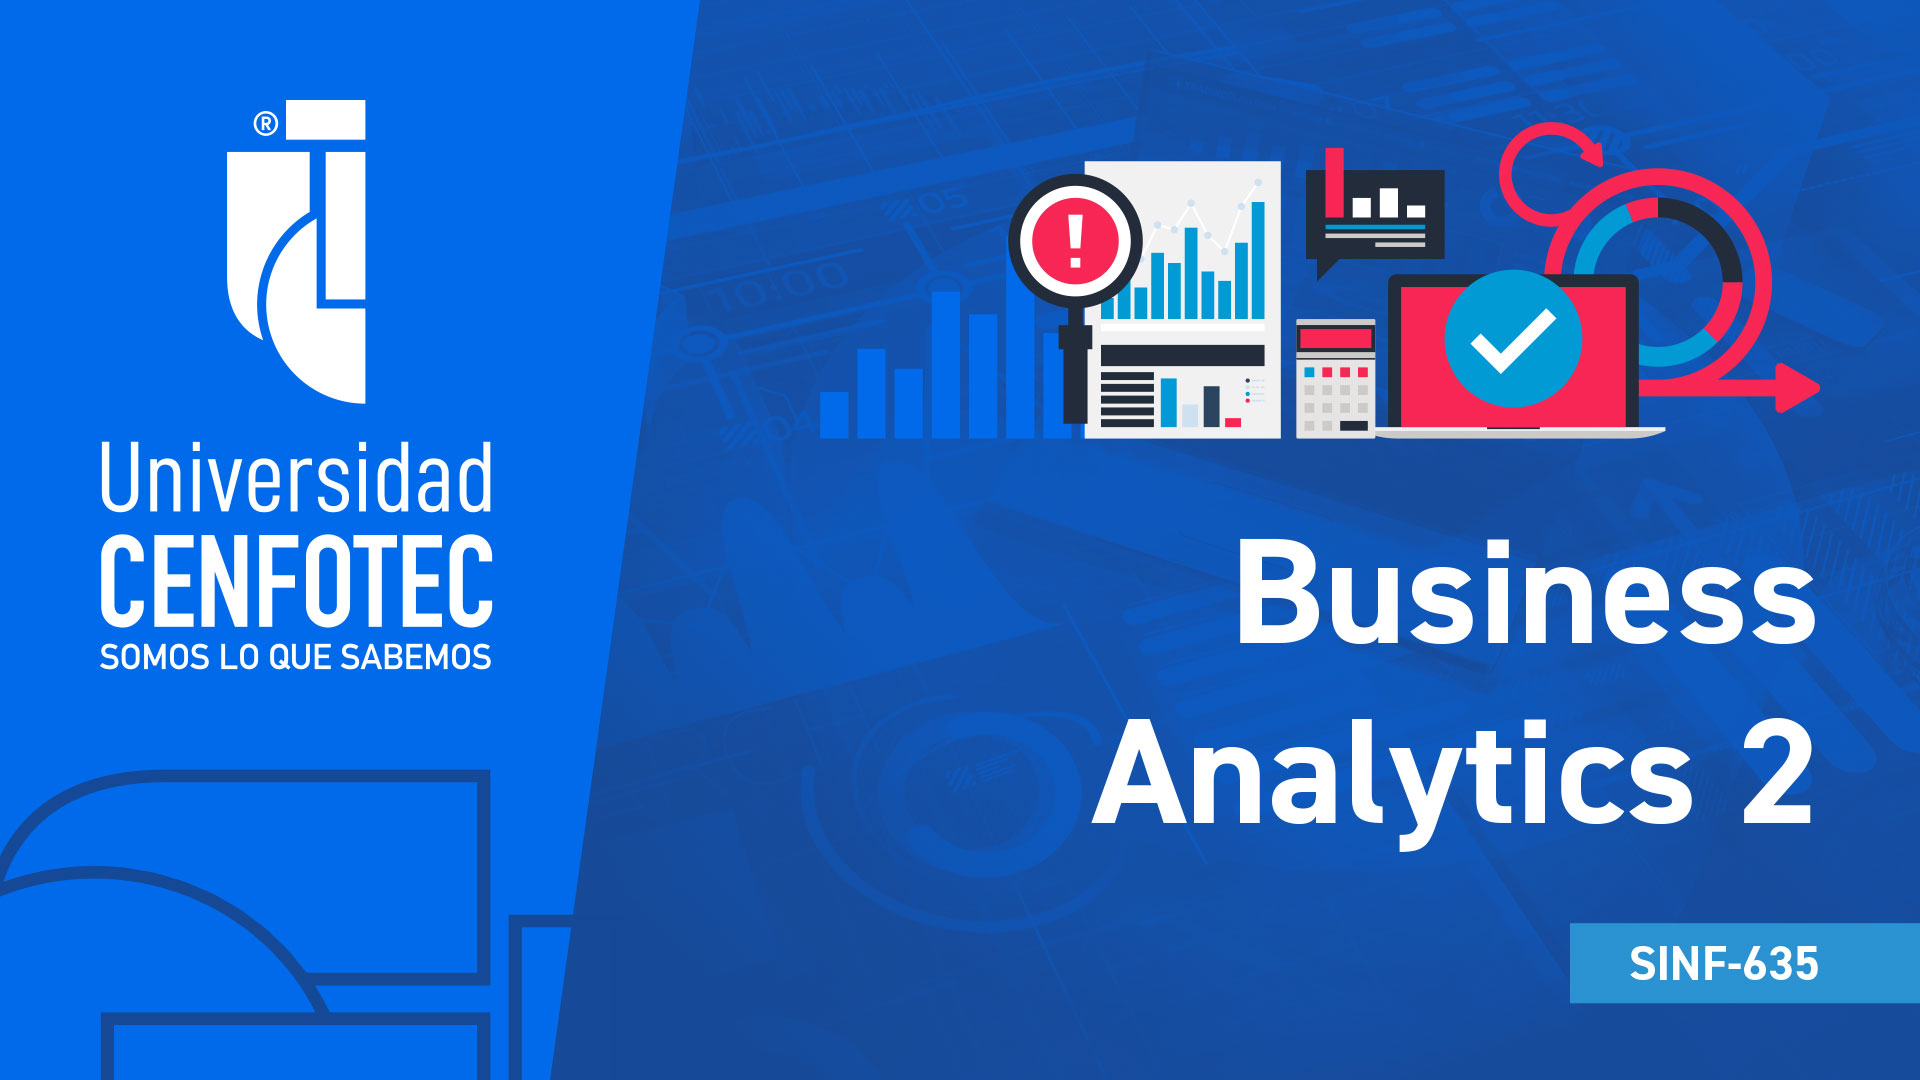 Business Analytics 2